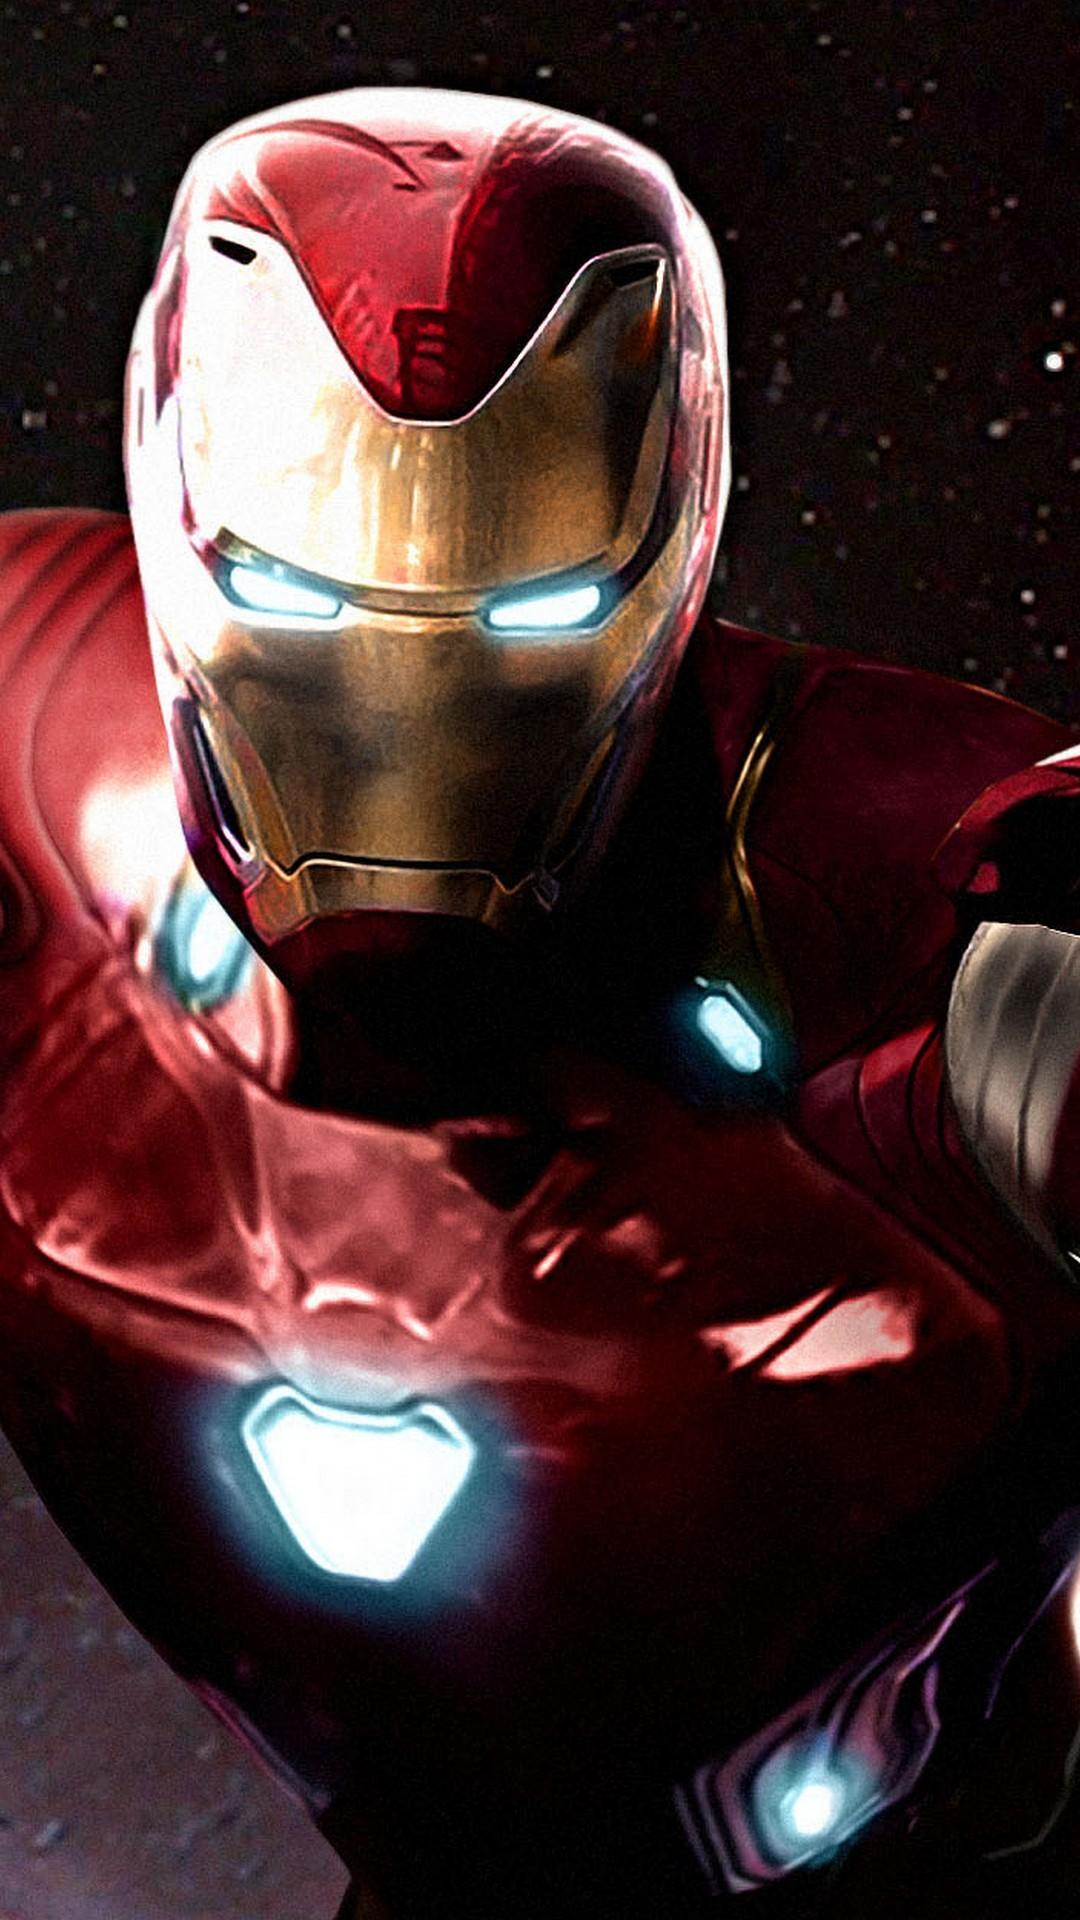 Iron Man Avengers Infinity War iPhone Wallpaper 3D iPhone